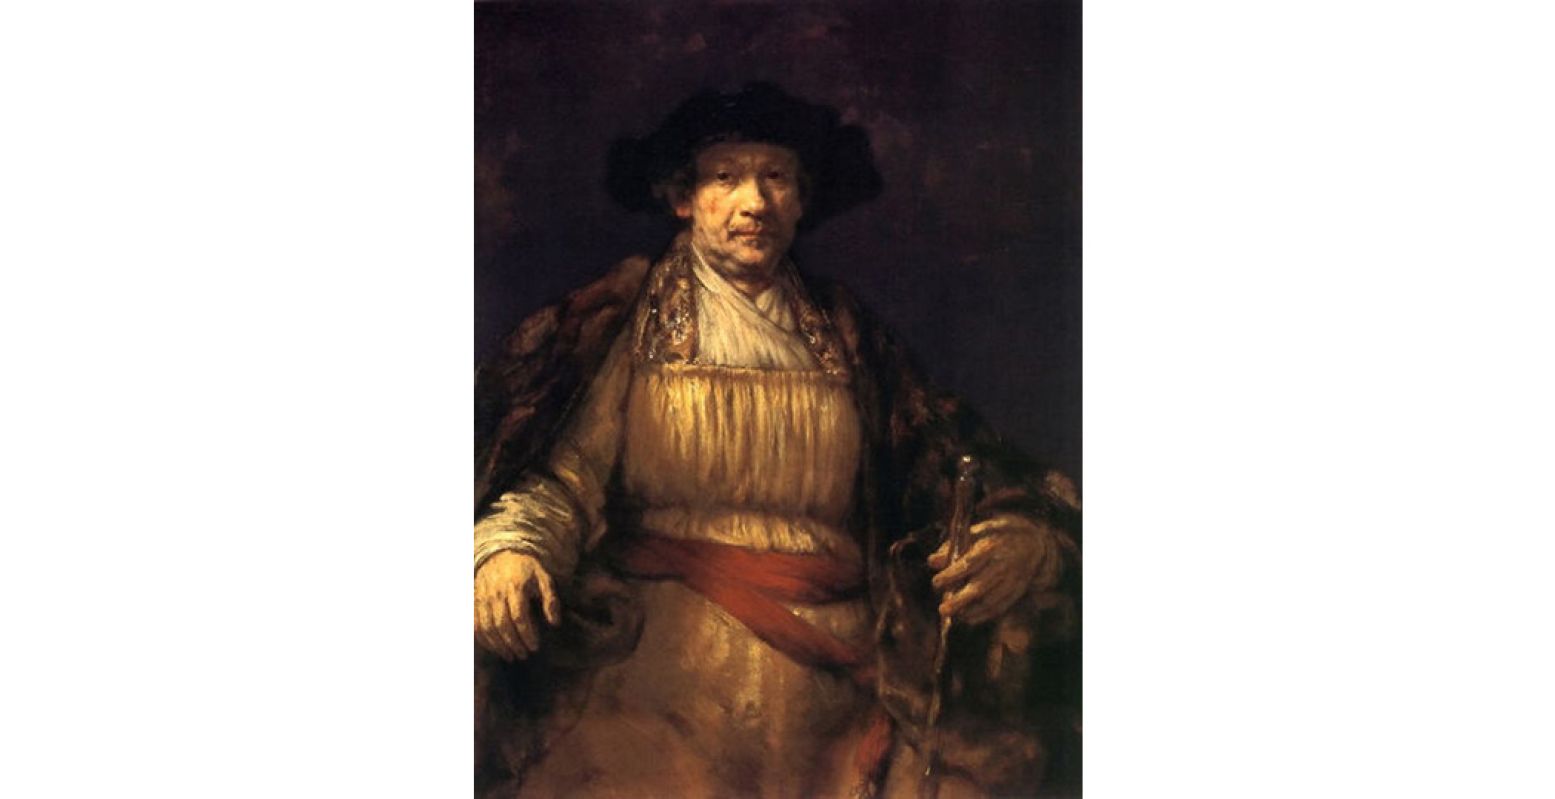 Het beroemde en bejubelde zelfportret van Rembrandt uit 1658 komt naar Het Mauritshuis, samen met nog 9 meesterwerken uit de Frick Collection in Amerika. Foto: Rembrandt, zelfportret 1658, Frick Collection New York